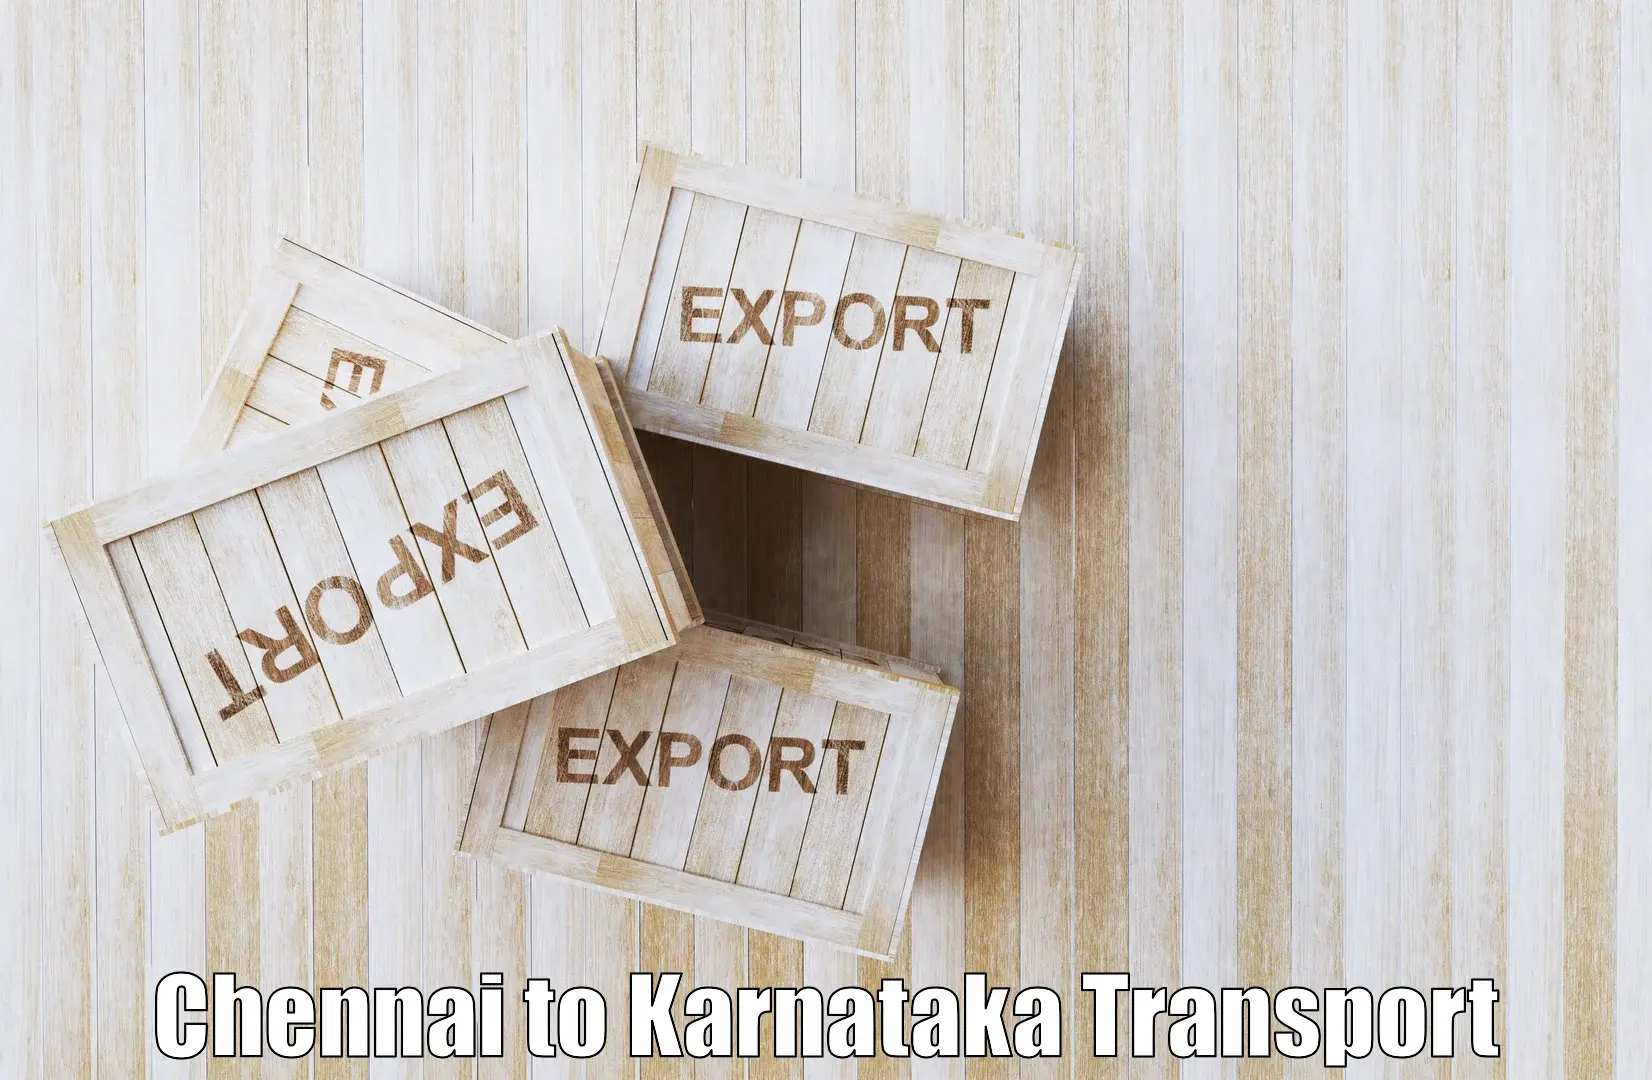 Nearby transport service Chennai to Kanakapura